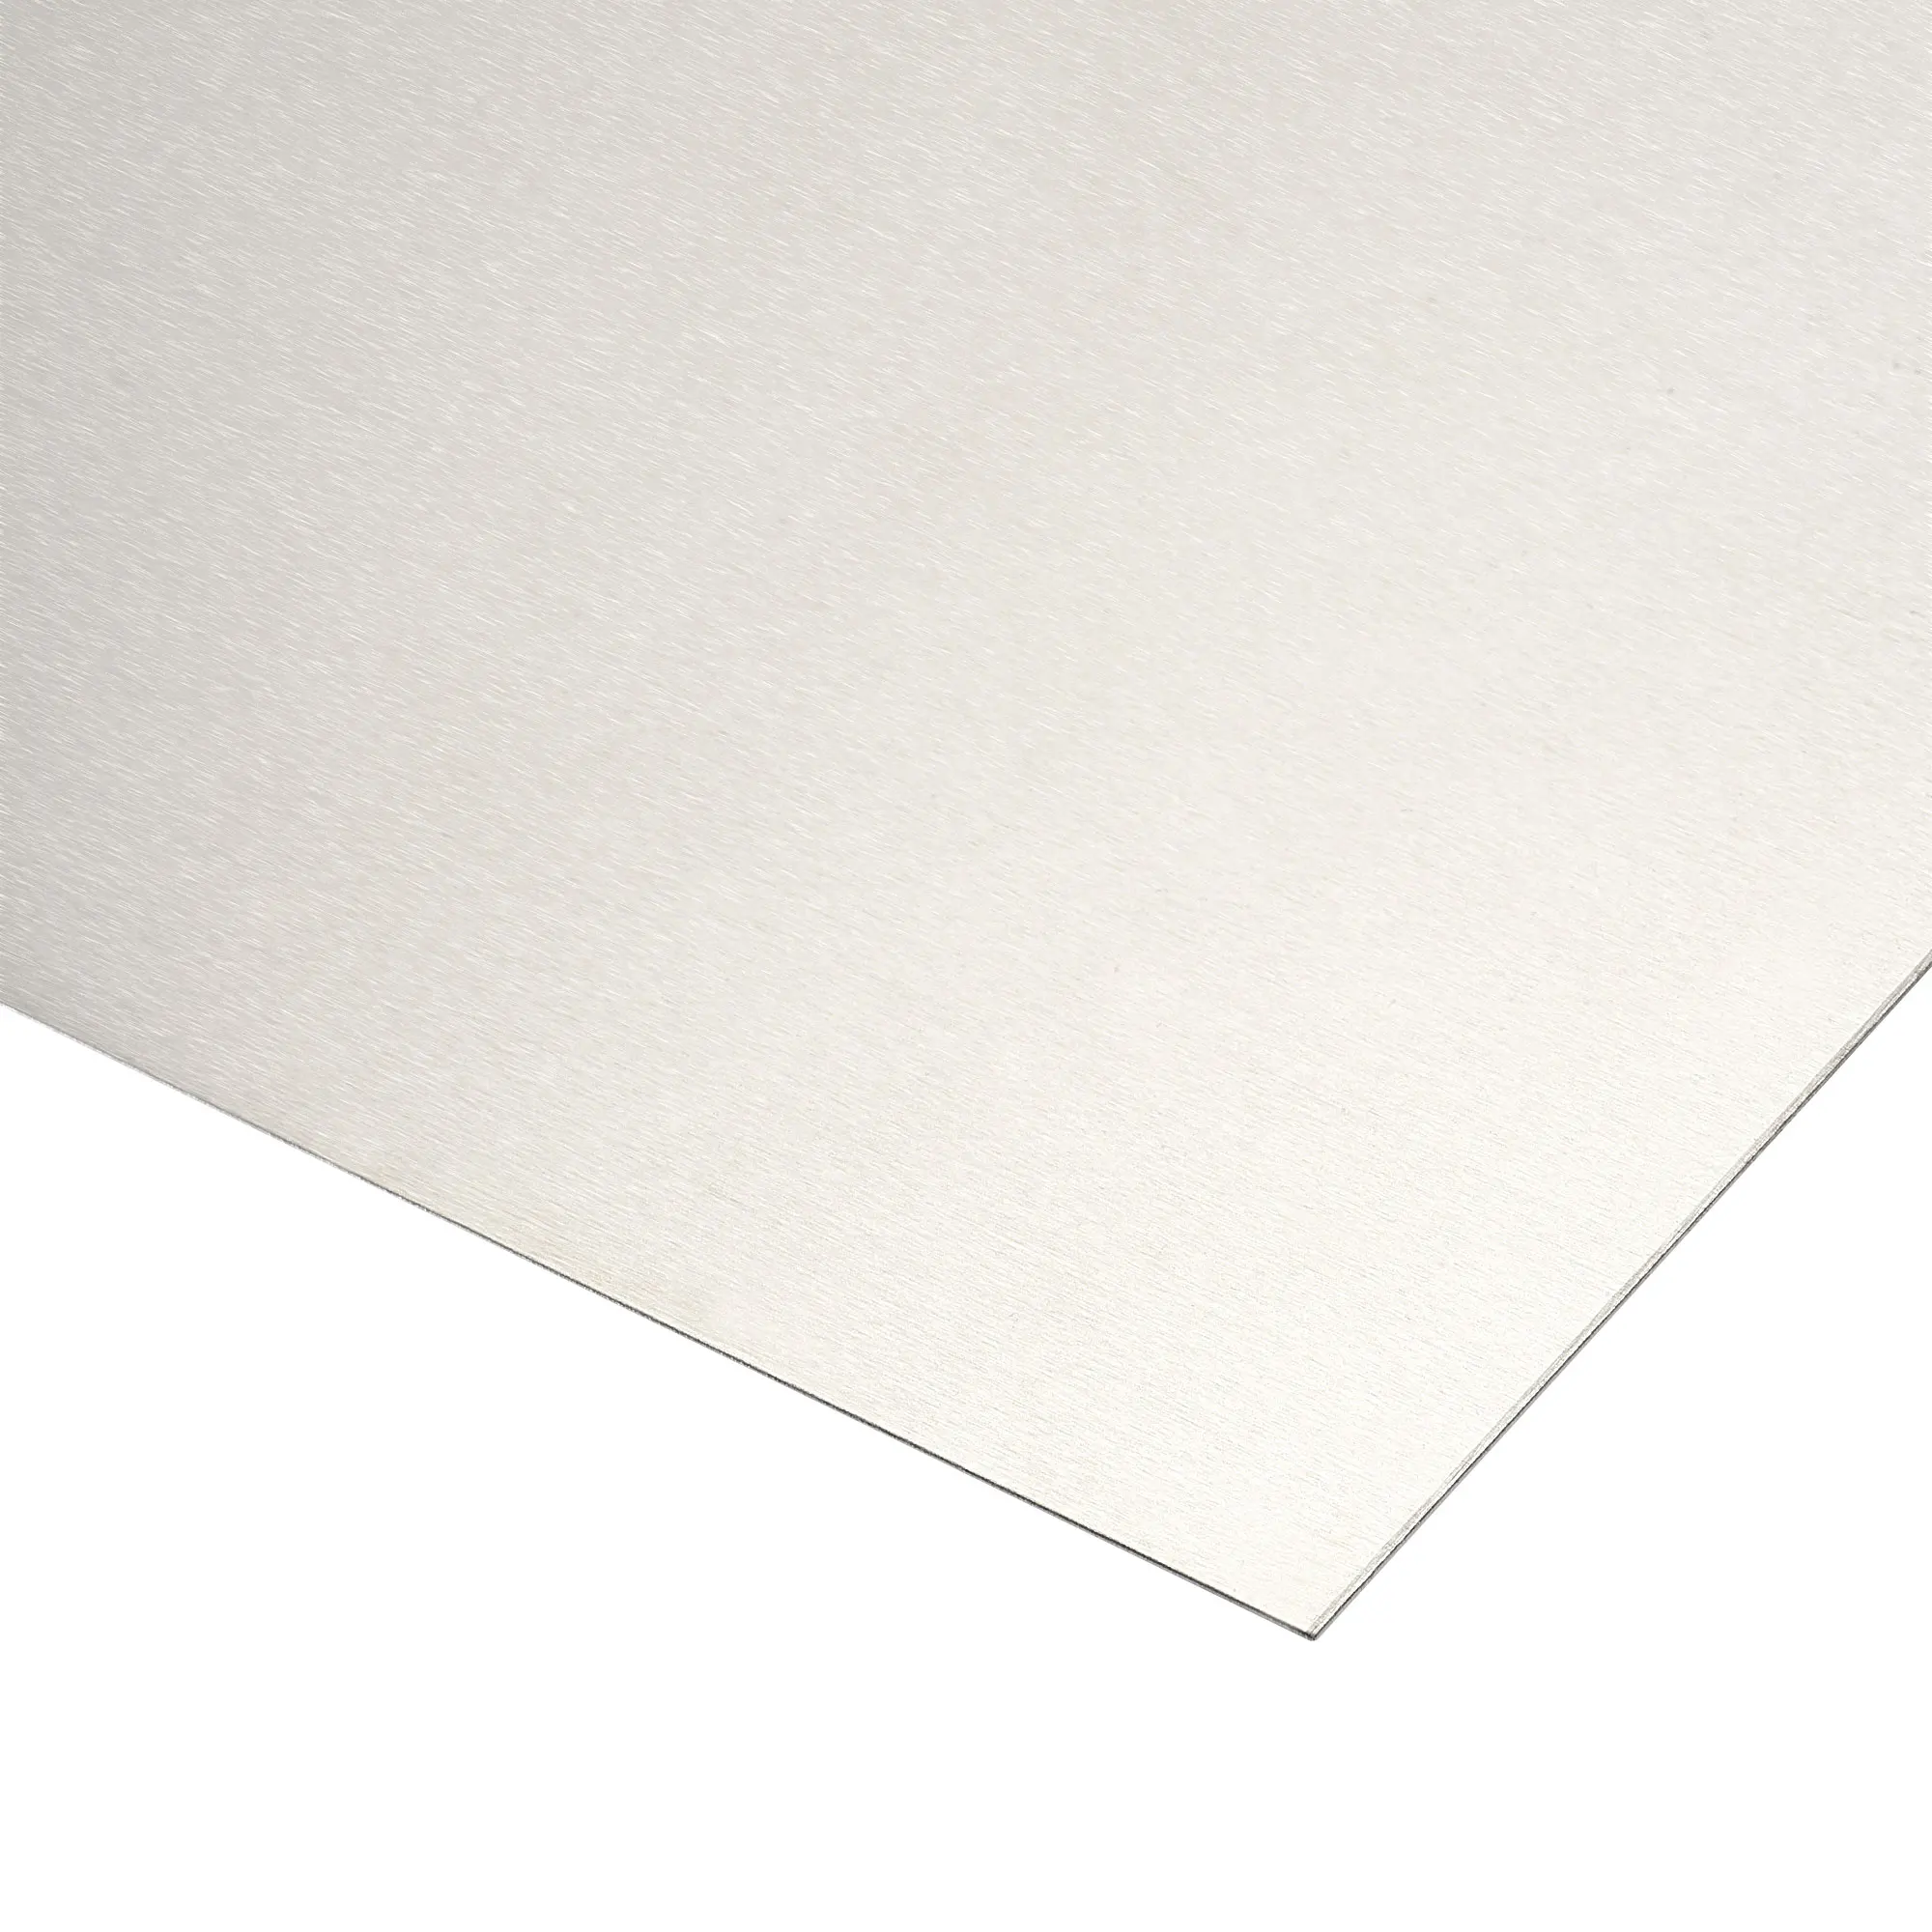 

Uxcell Aluminum Sheet, 300mm x 300mm x 0.6mm Thickness 5052 Aluminum Plate